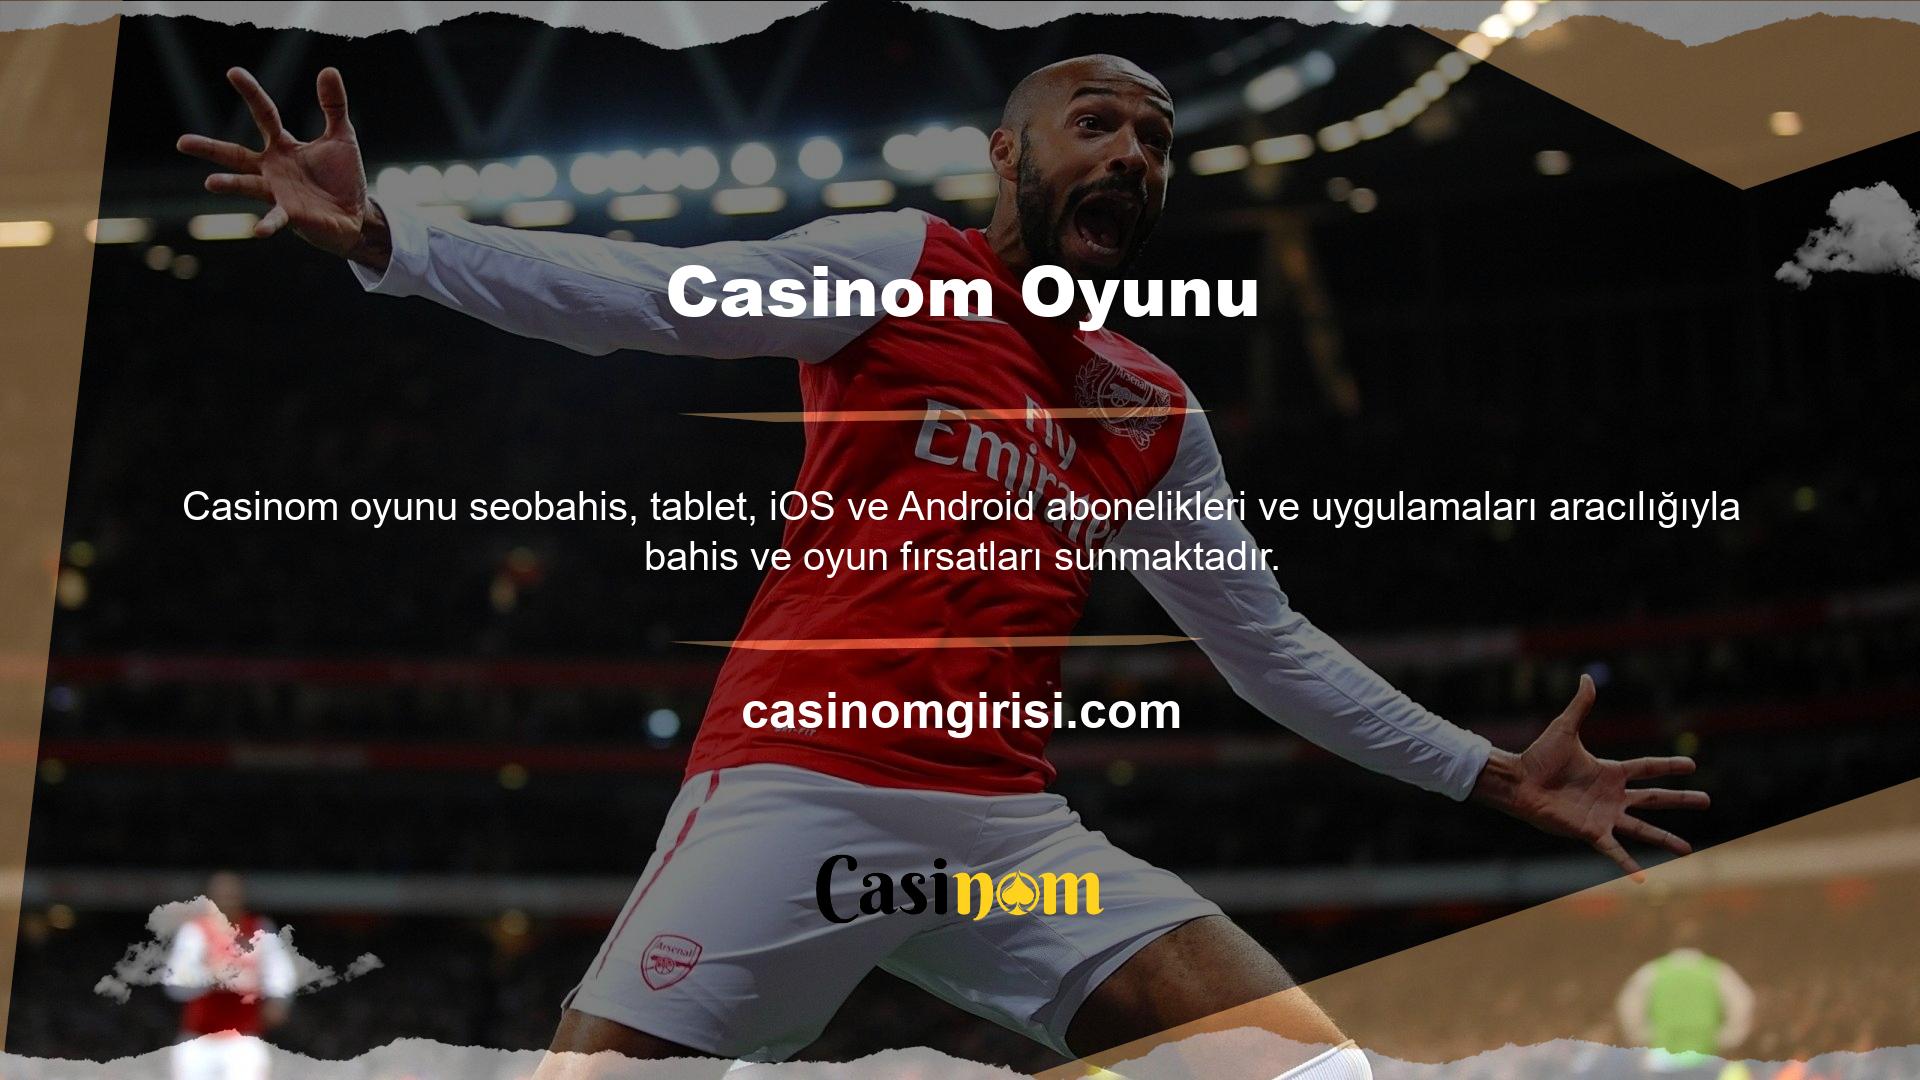 Çevrimiçi casino platformunun mobil uygulaması